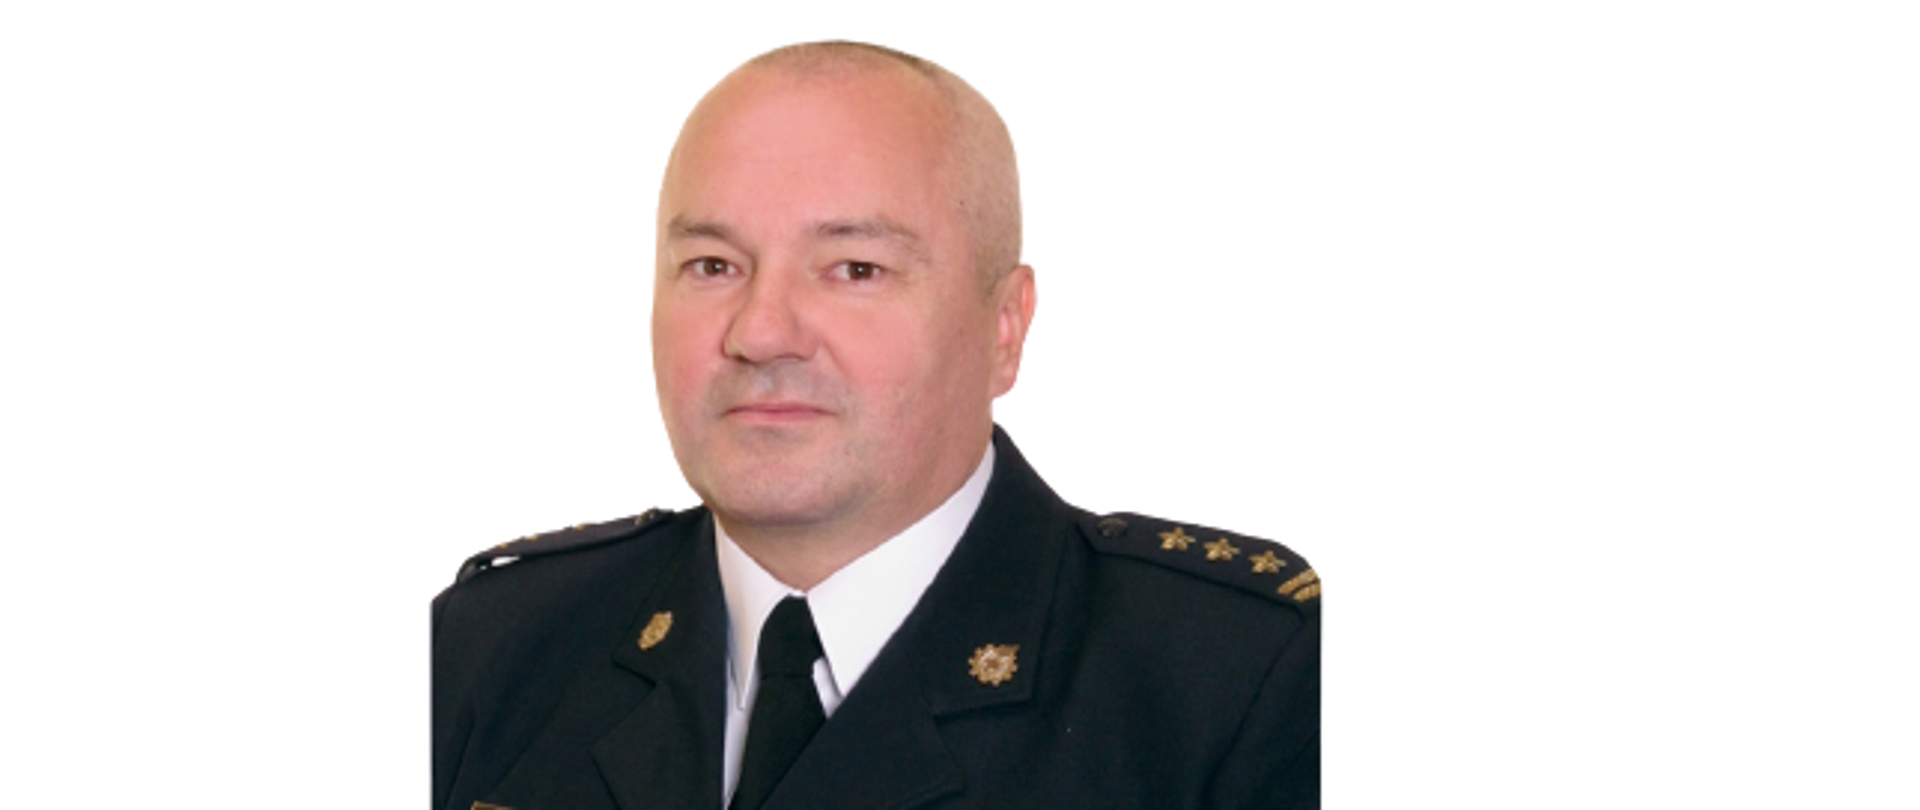 Zdjęcie portretowe Komendanta Powiatowego Państwowej Straży Pożarnej w Wołominie w mundurze galowym